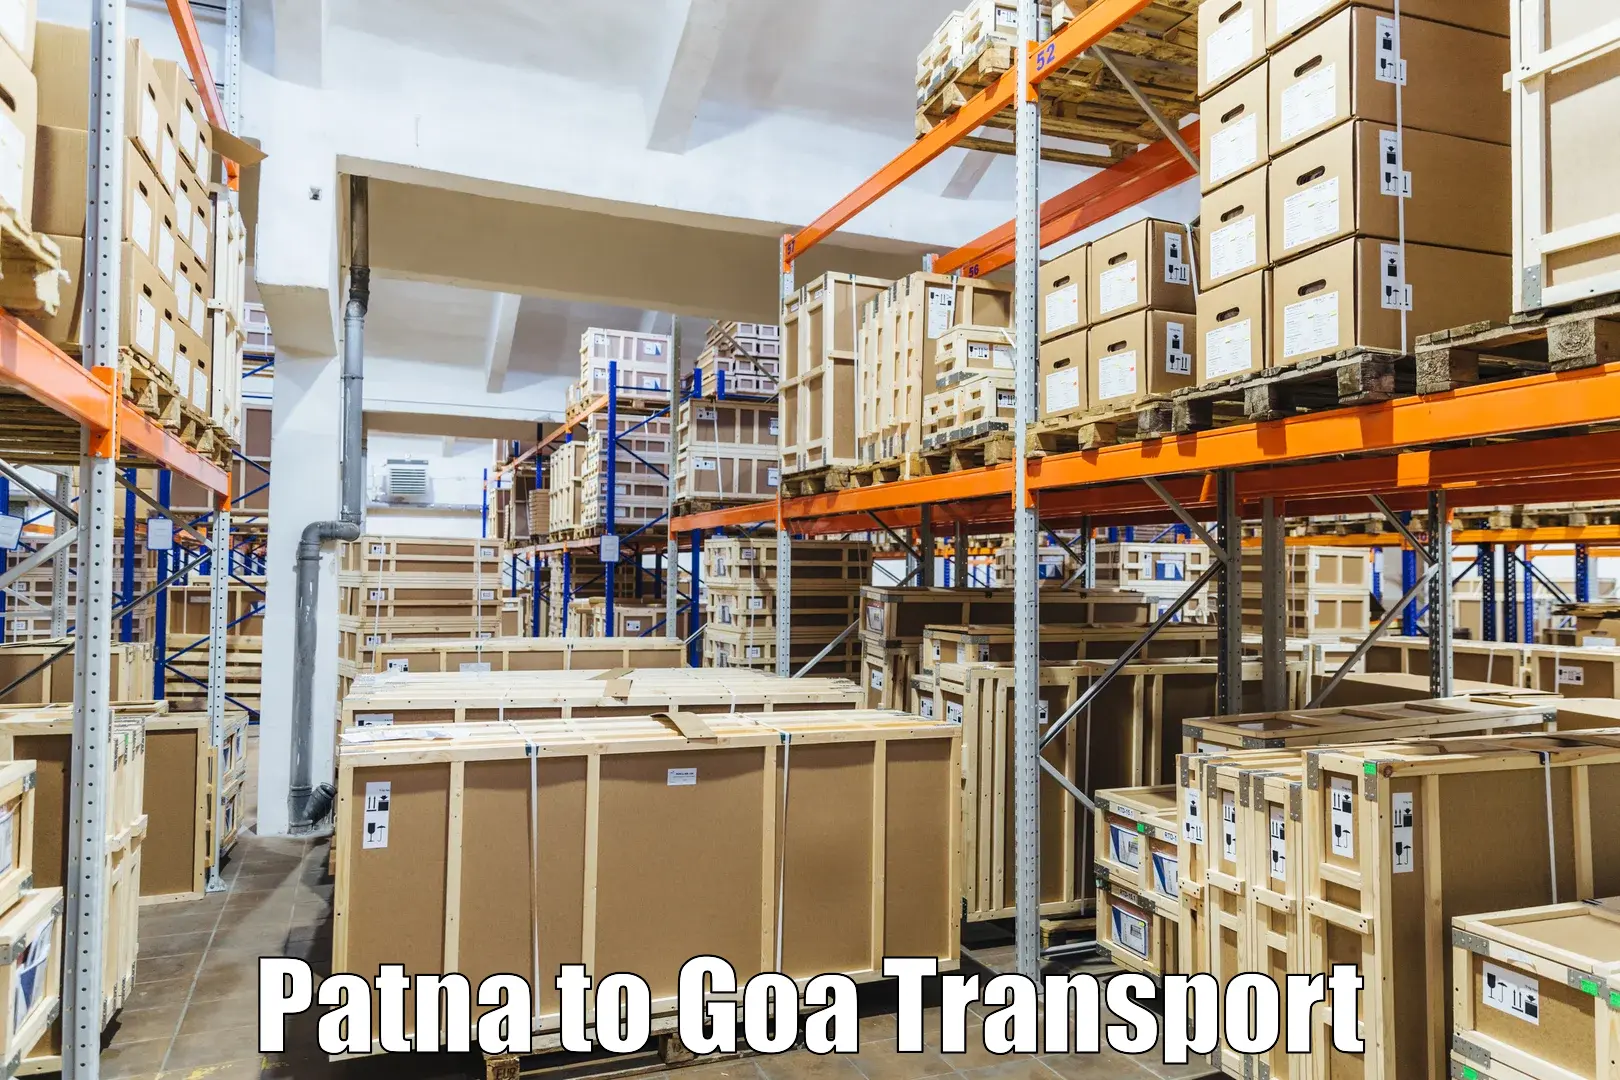 Daily transport service Patna to Goa University